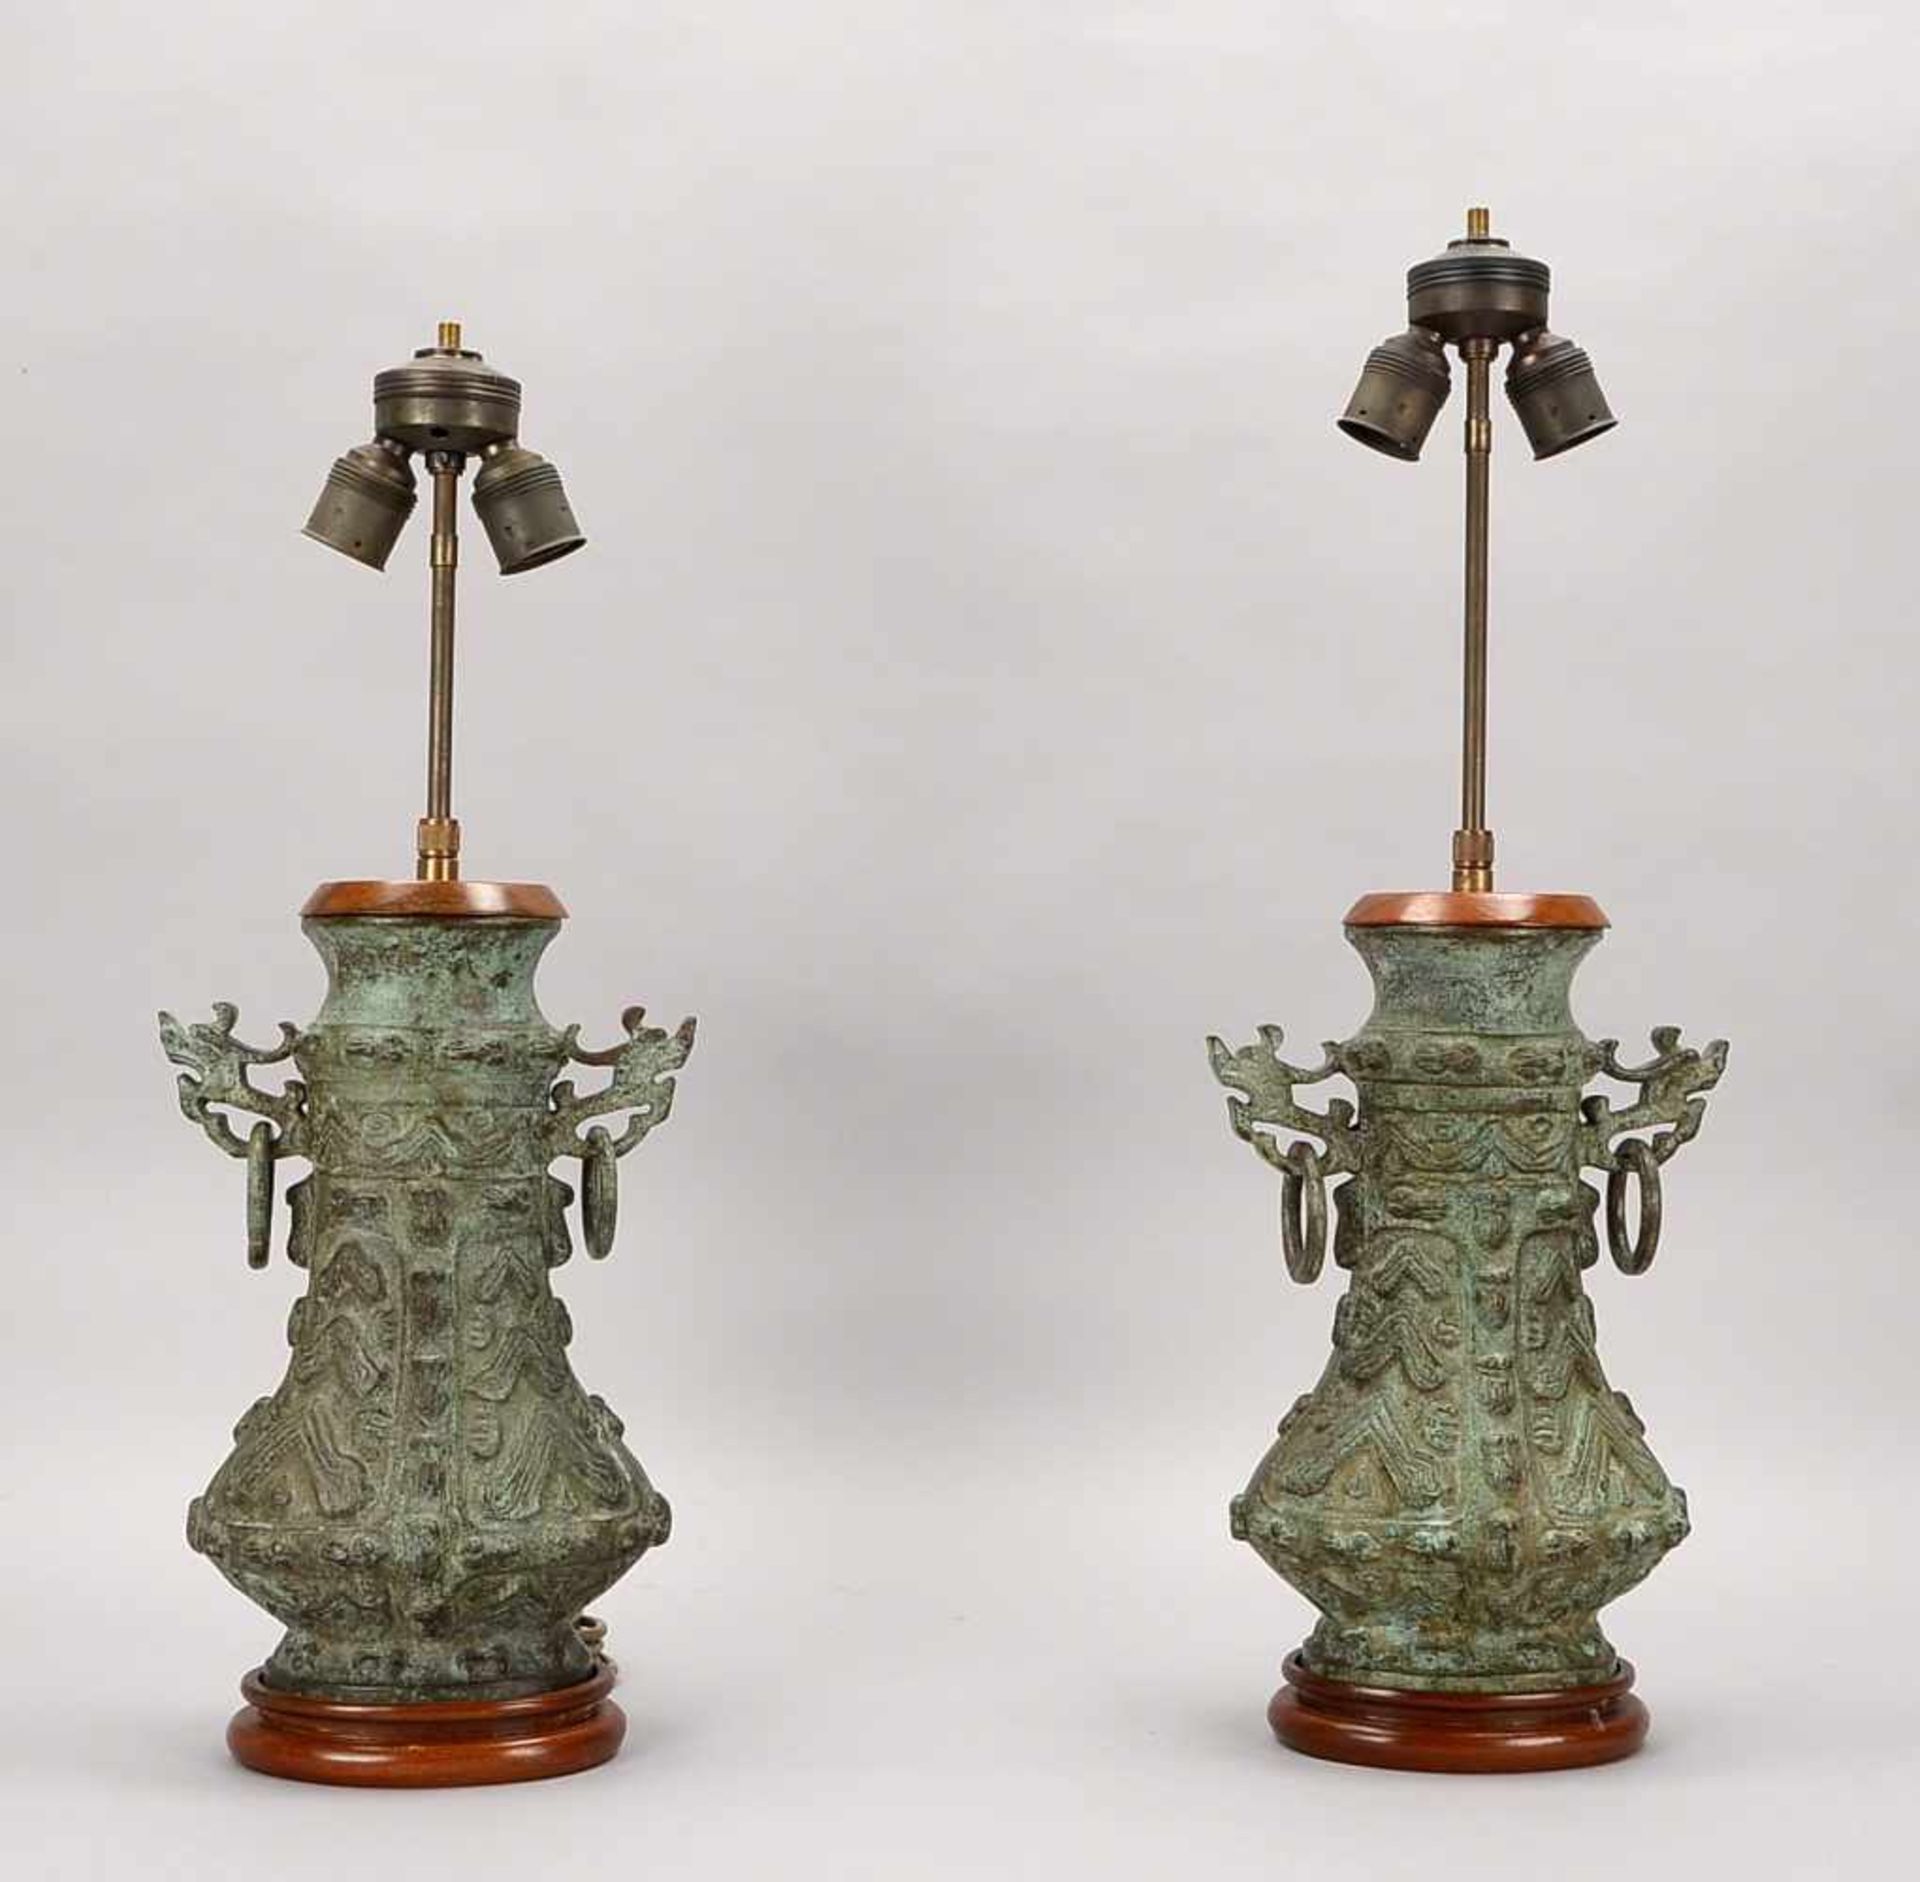 Paar Tischlampen, China, je 2-flammig/mit 2x Stoff-Schirmen, Bronze-Korpus/grün patiniert, stark - Bild 2 aus 2